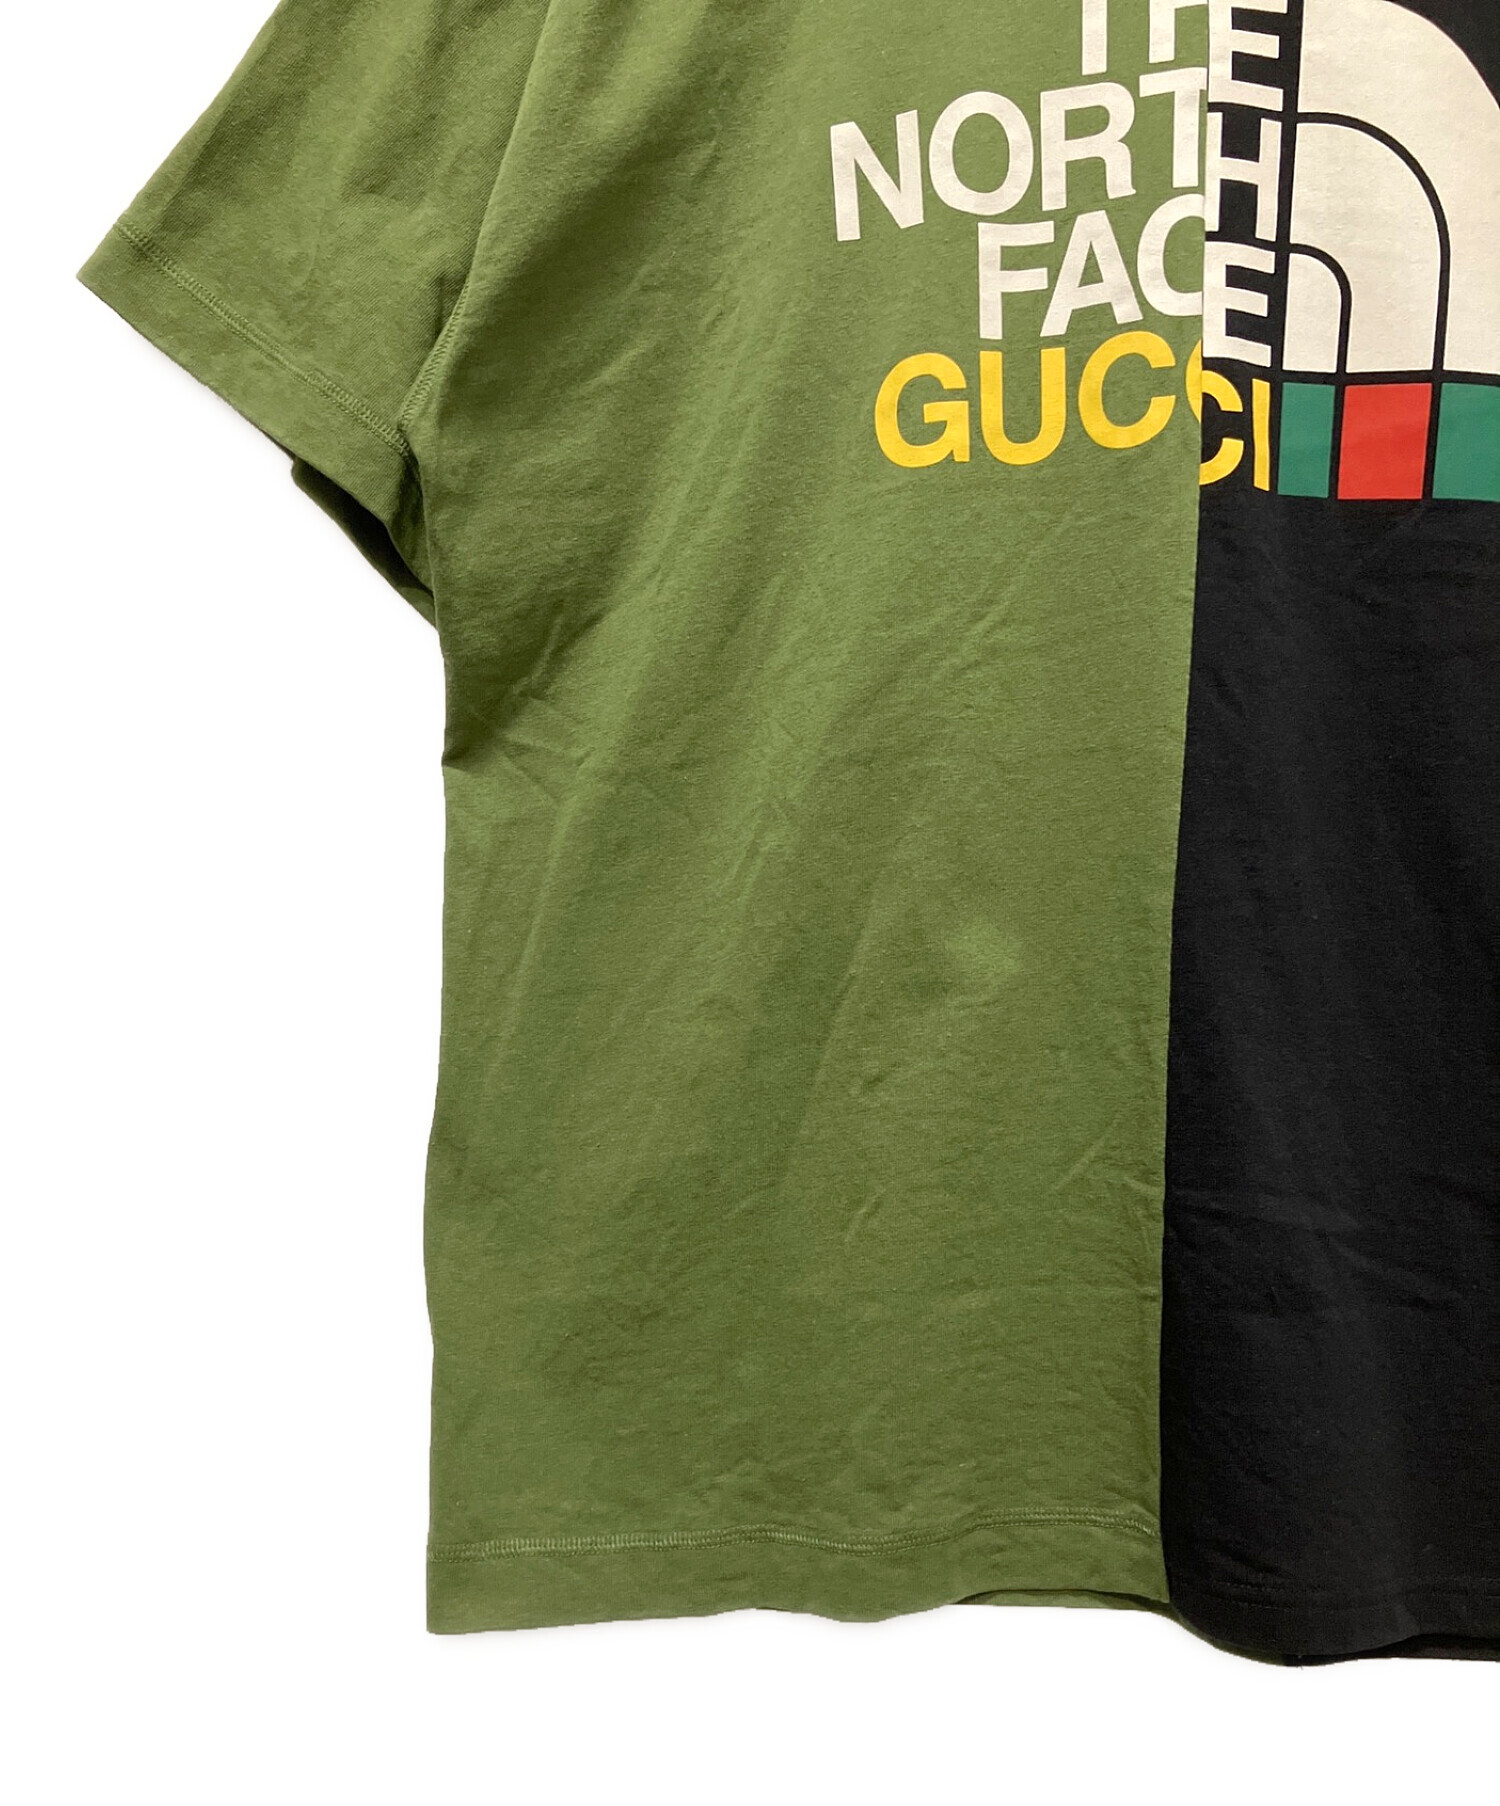 GUCCI (グッチ) THE NORTH FACE (ザ ノース フェイス) コラボバイカラーTシャツ グリーン×ブラック サイズ:XL